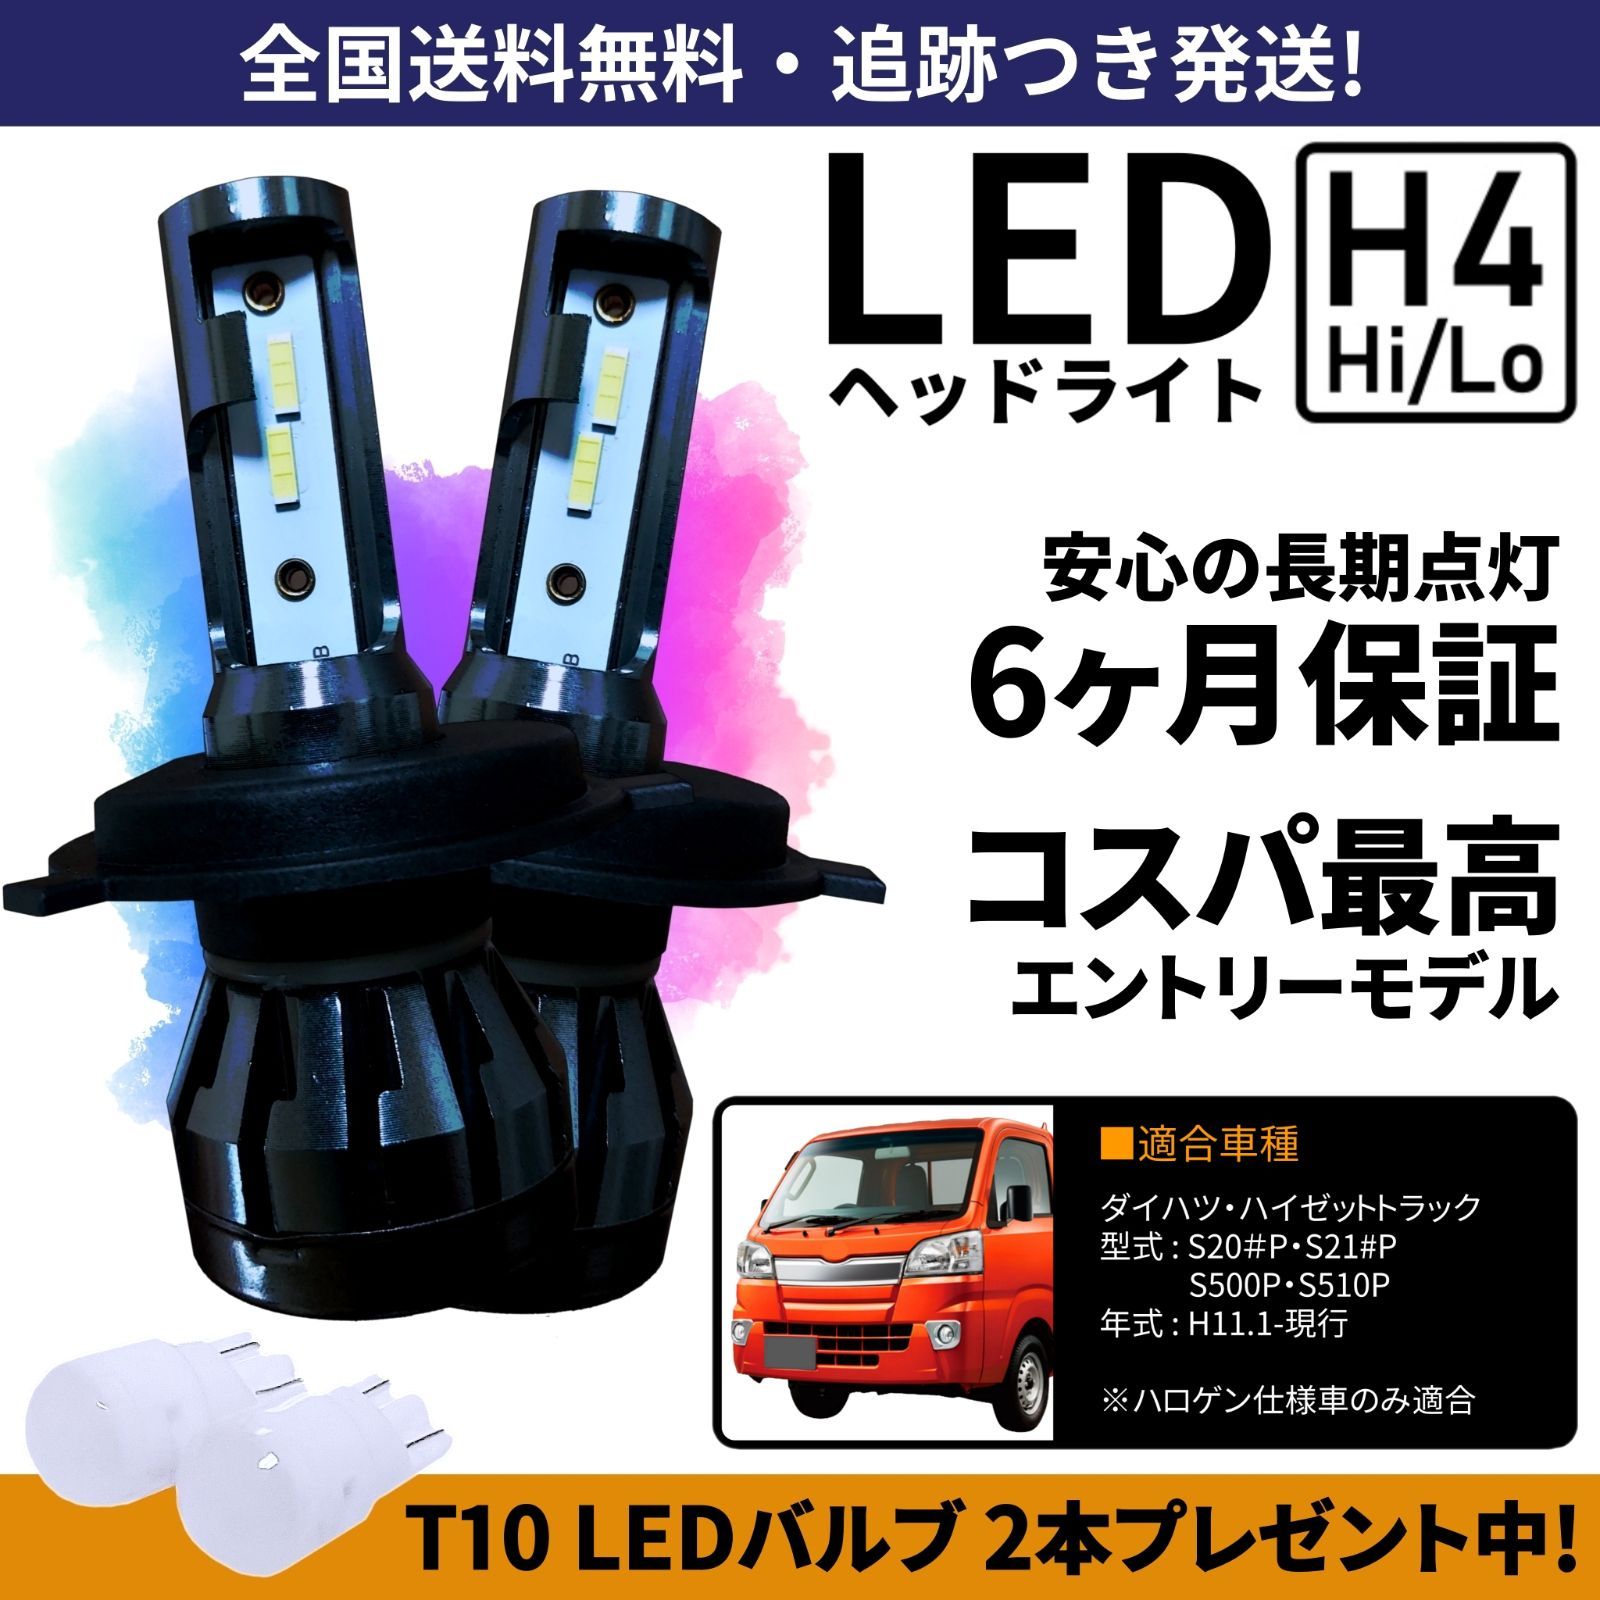 ダイハツ ハイゼットトラック 左LEDヘッドライト - ライト